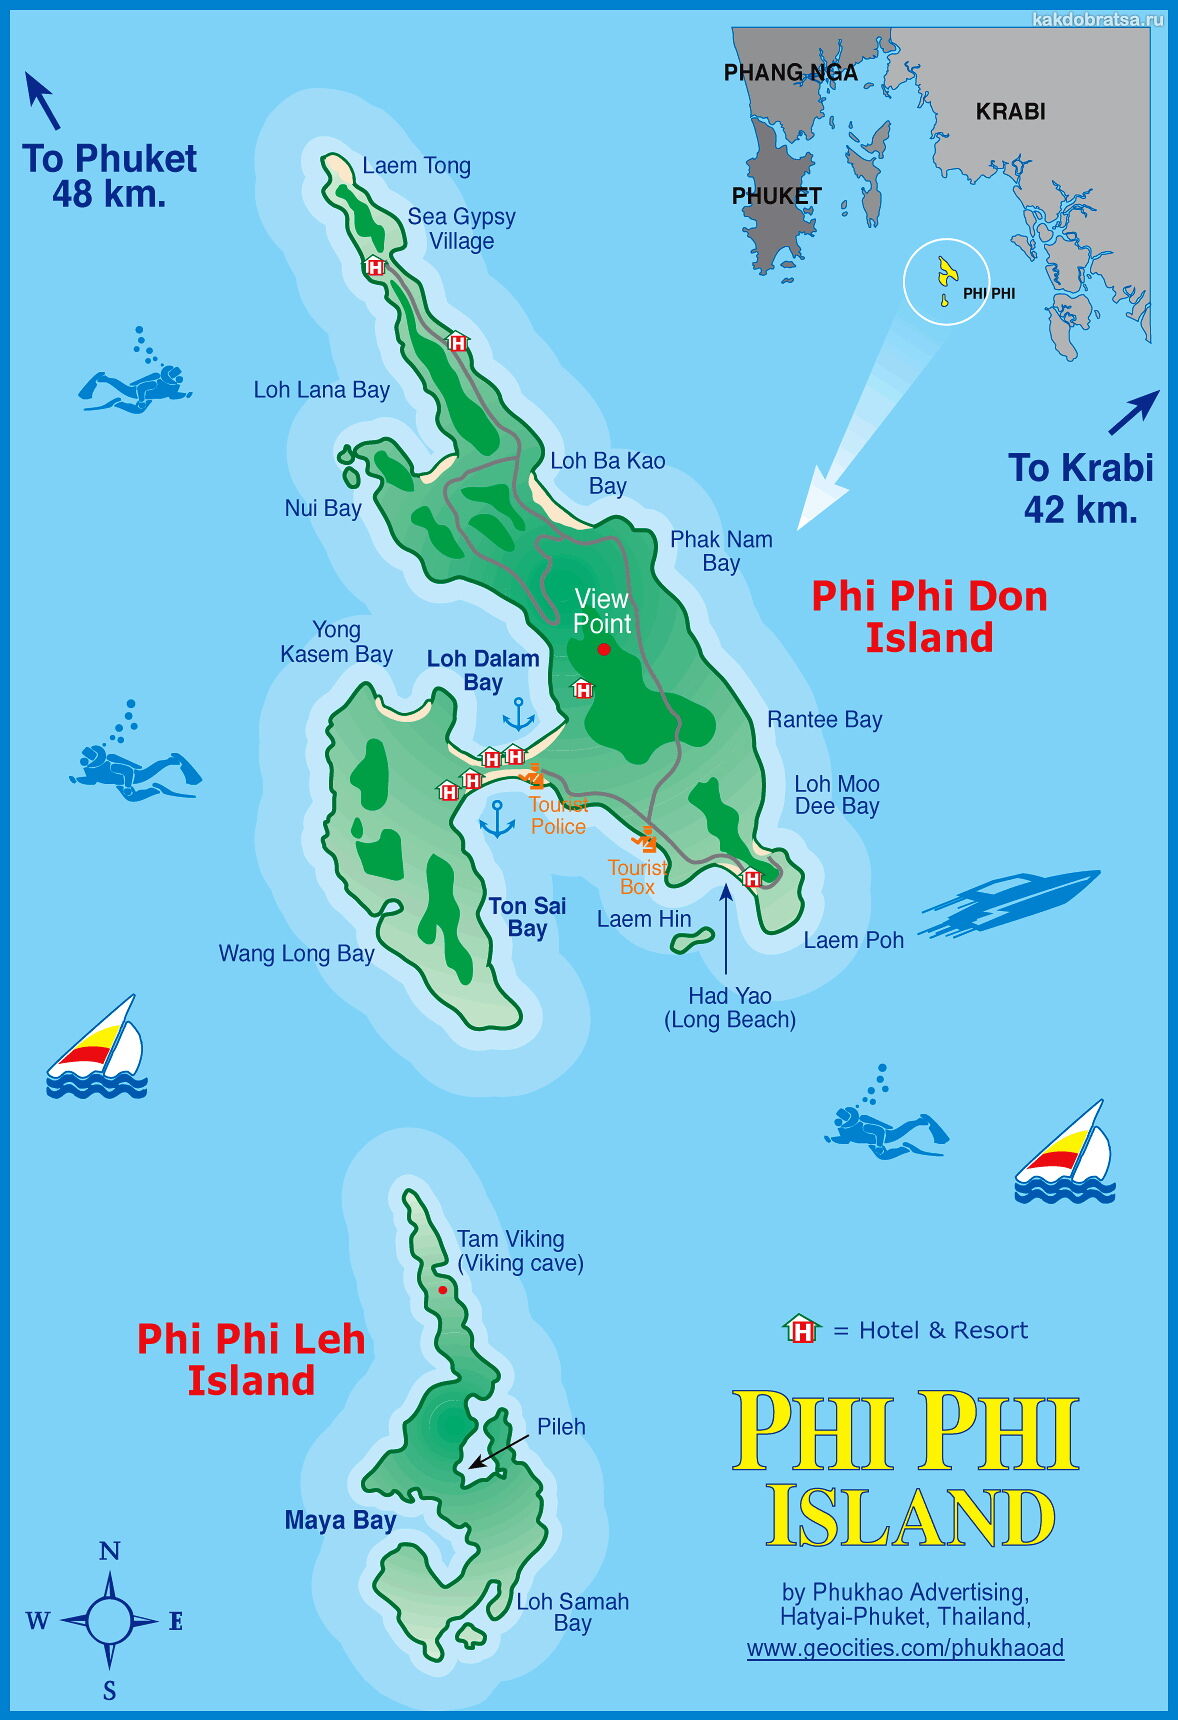 География островов Пхи-Пхи и карта